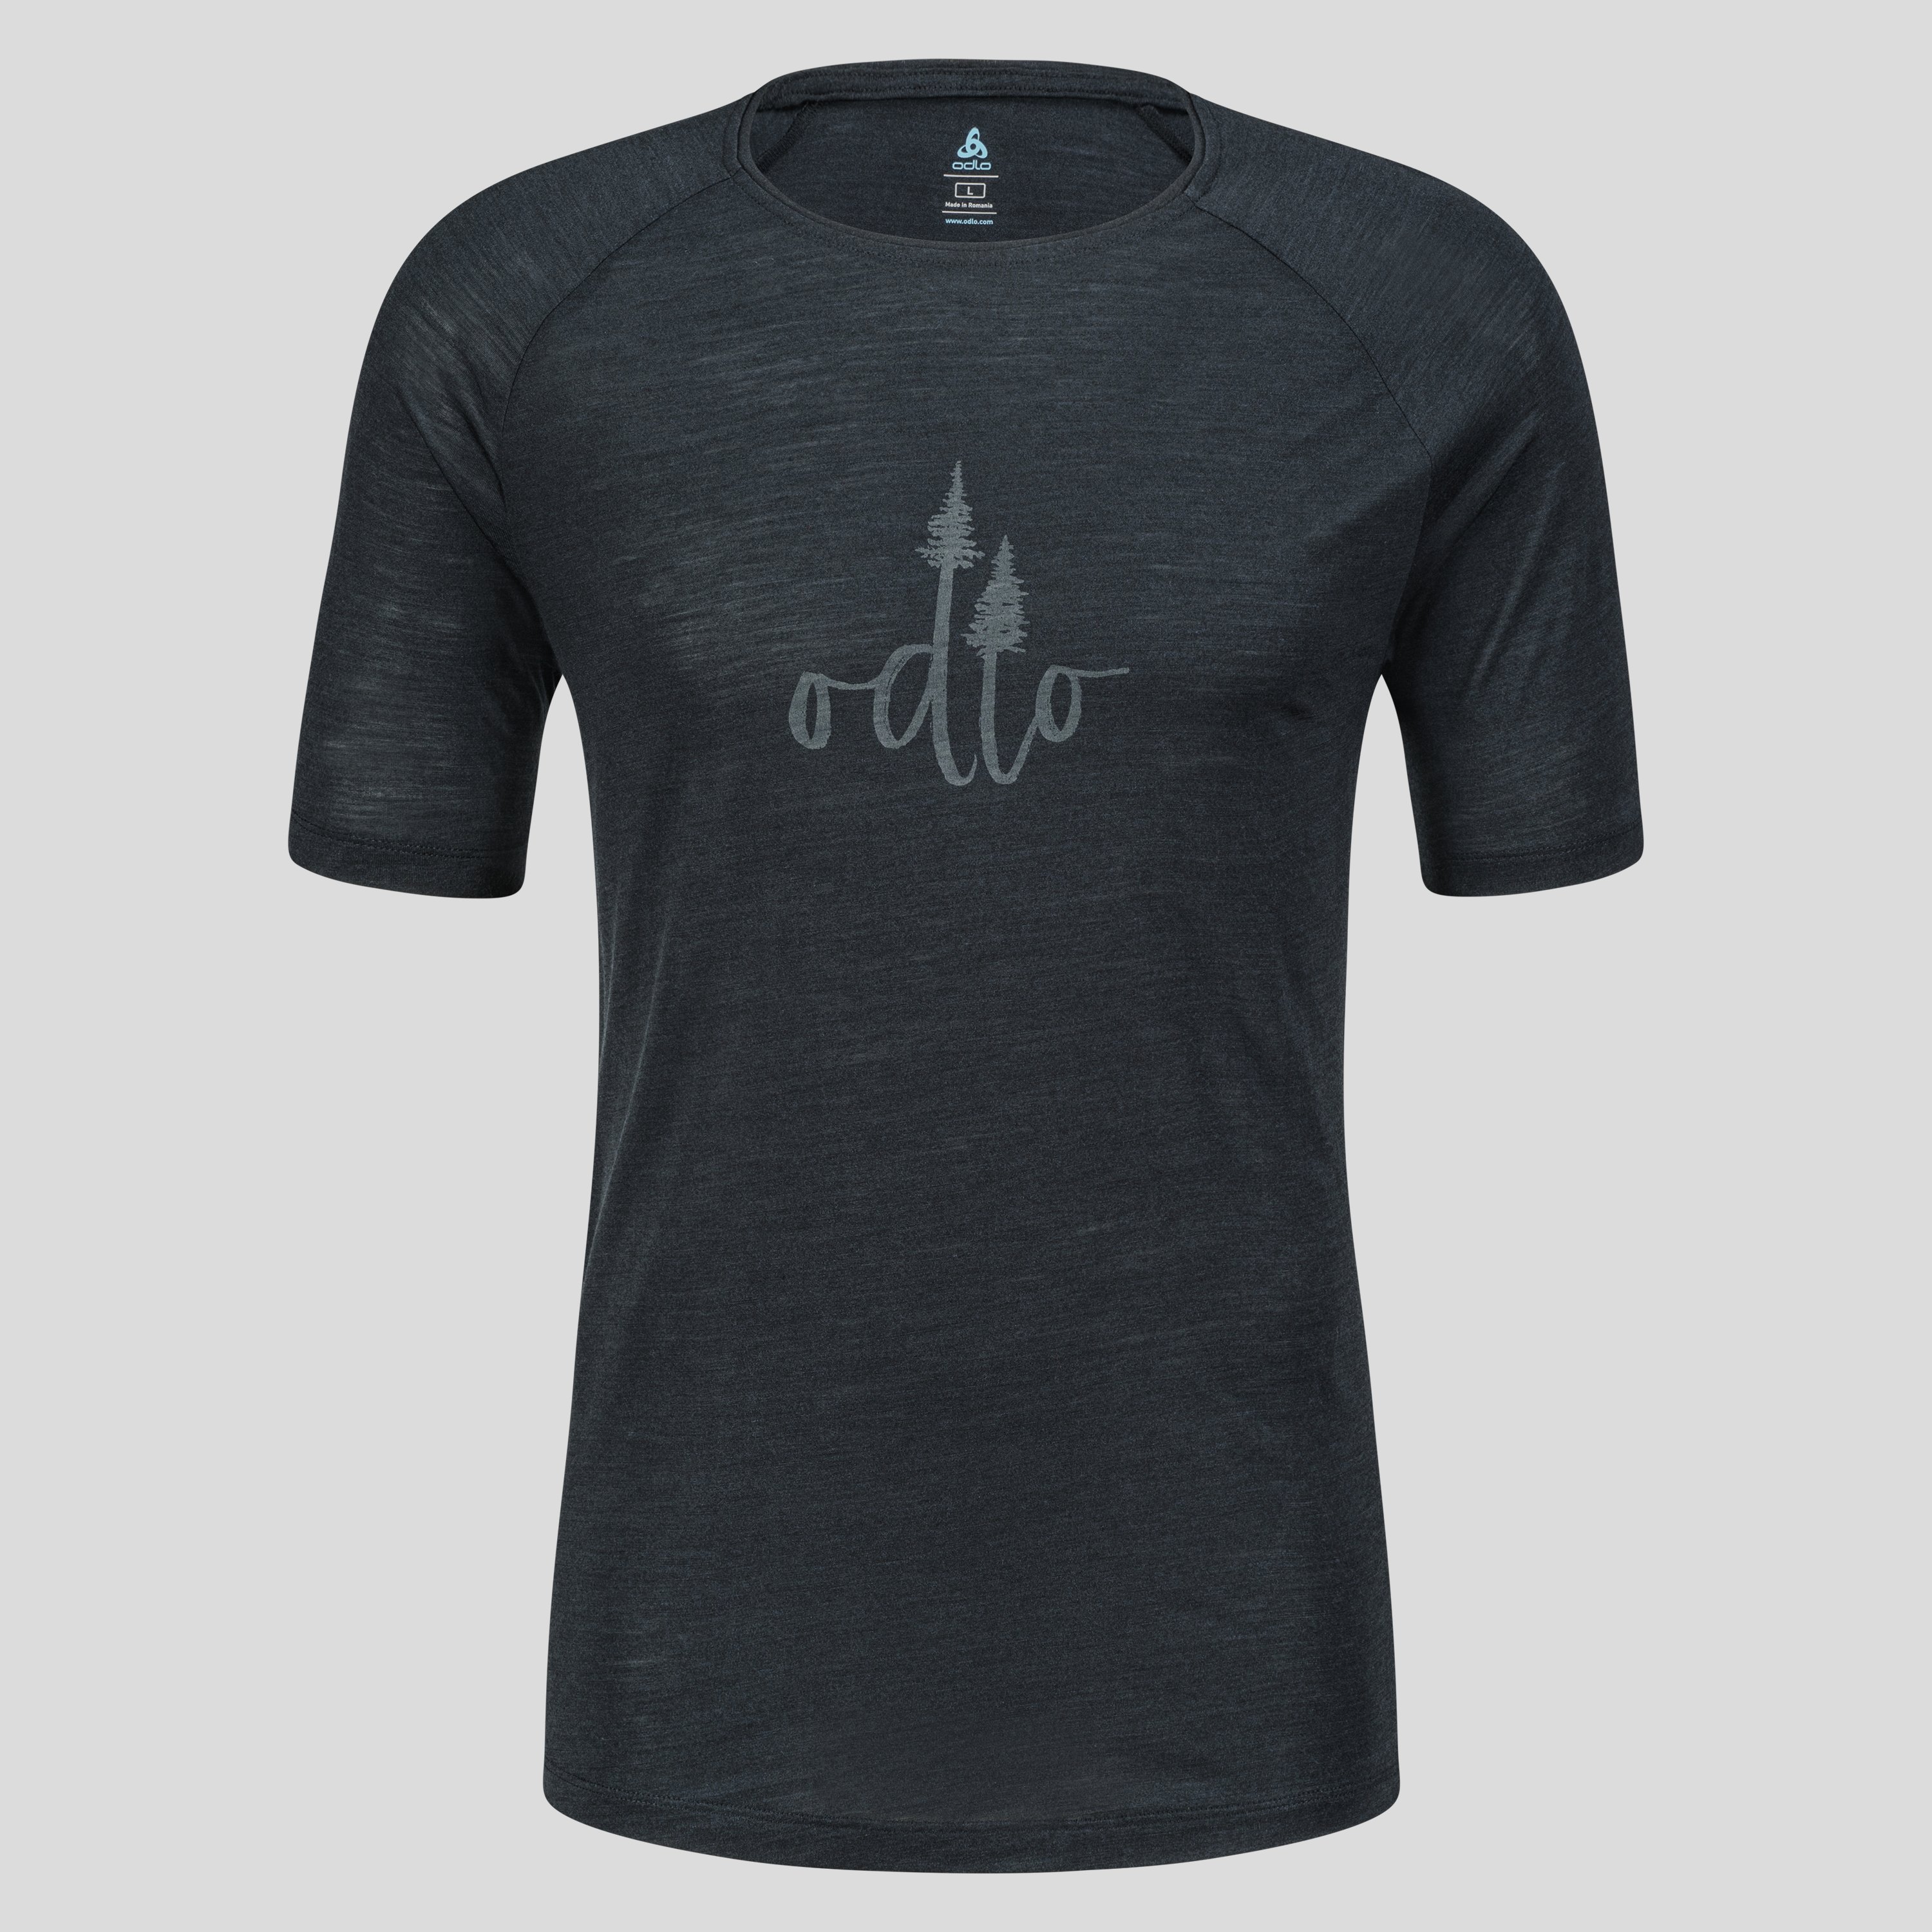 ODLO Ascent Performance Wool 130 T-Shirt mit Baumprint für Herren, XL, schwarz